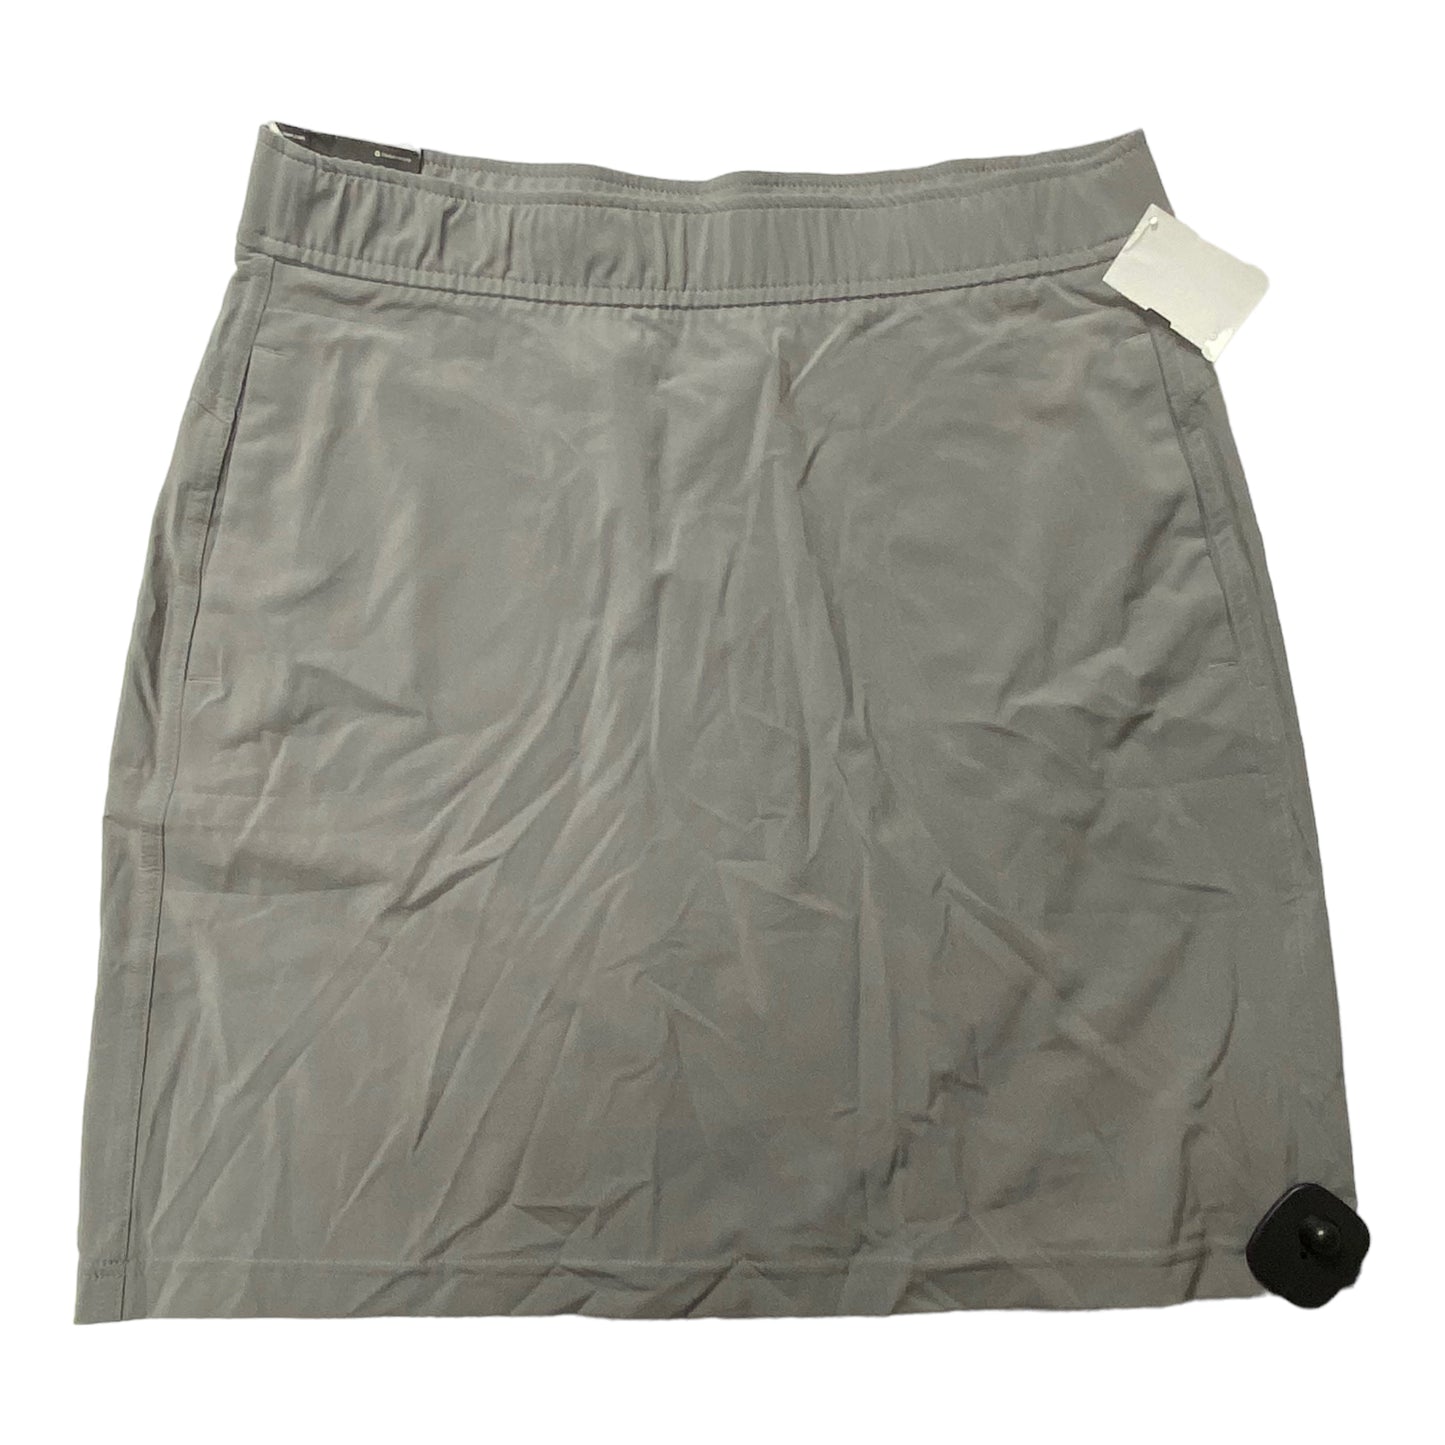 Grey Athletic Skirt Eddie Bauer, Size S